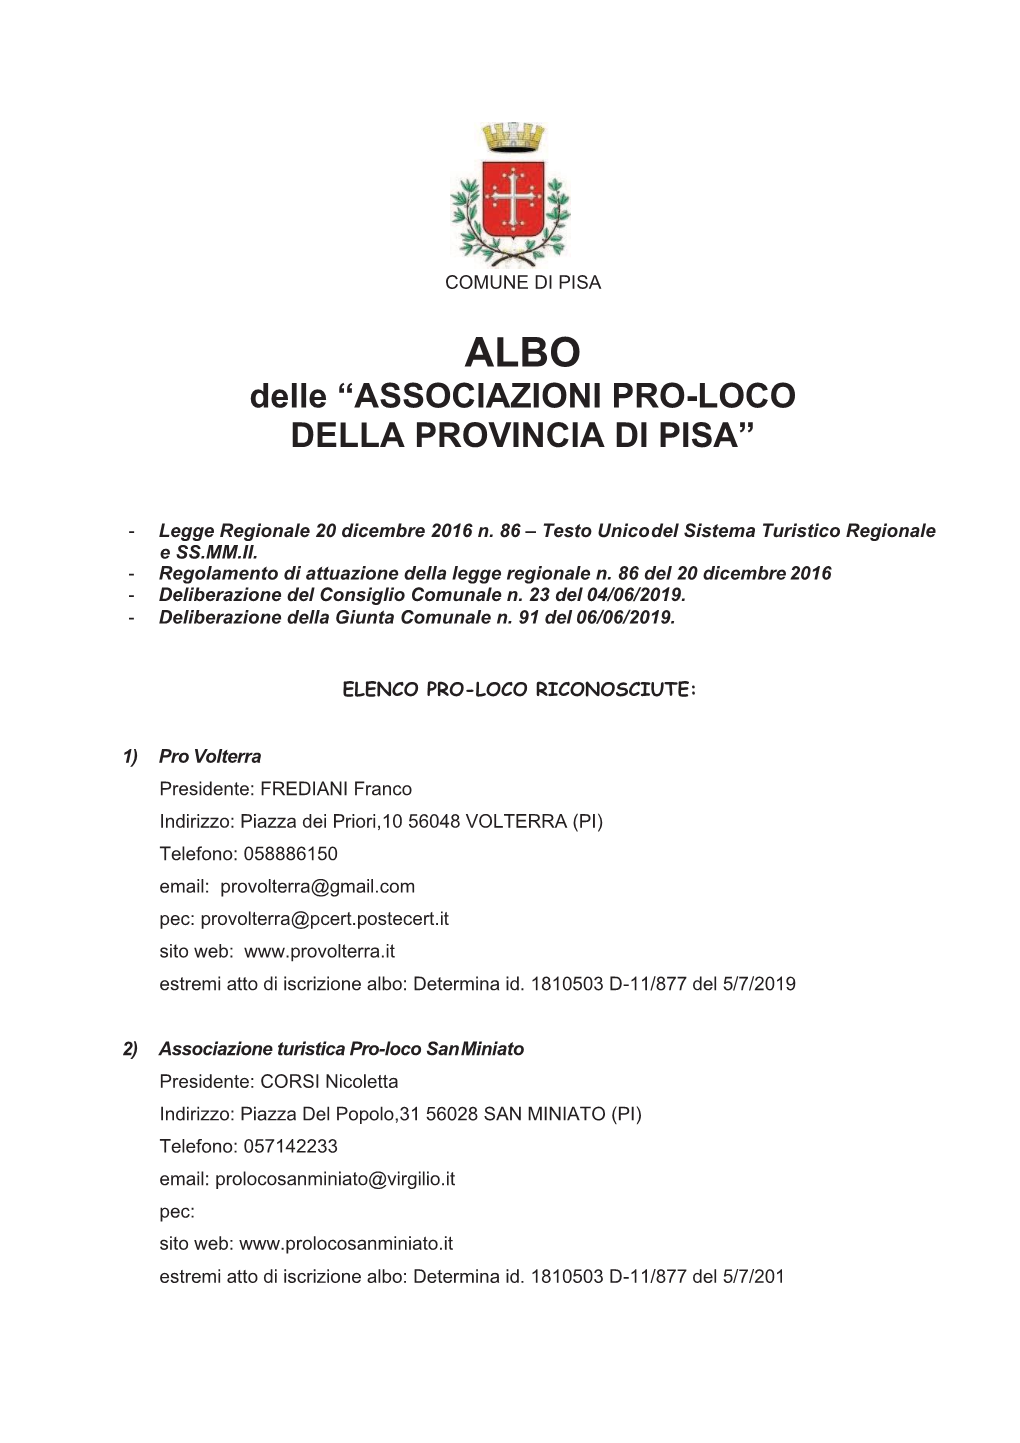 Associazioni Pro-Loco Della Provincia Di Pisa”